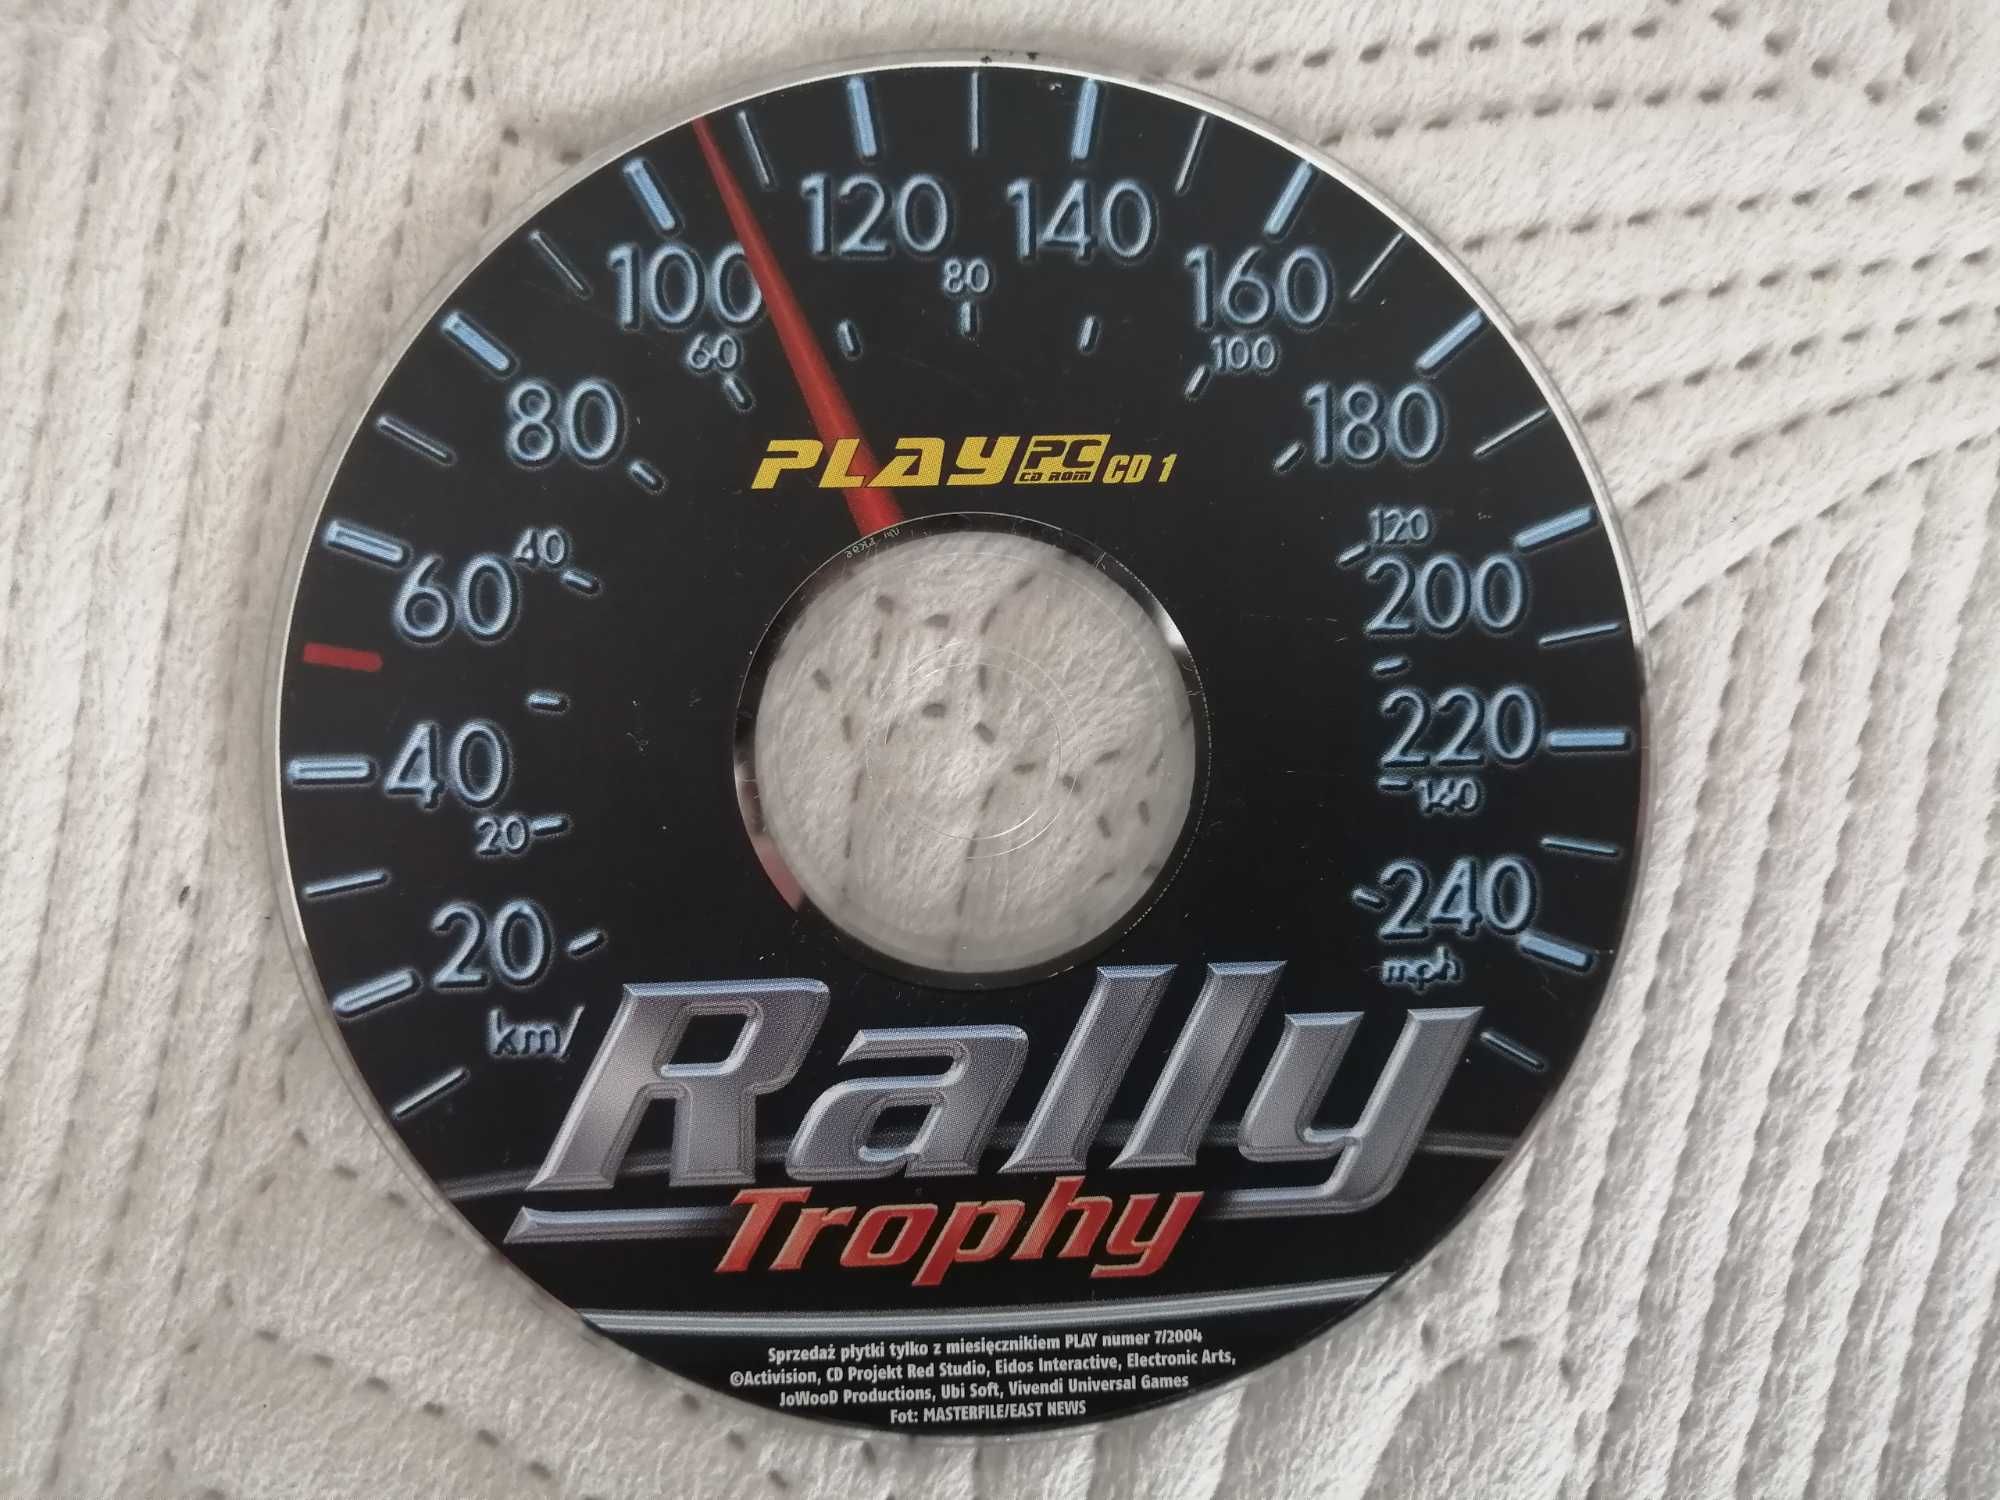 Rally Trophy (wyścigi) PC